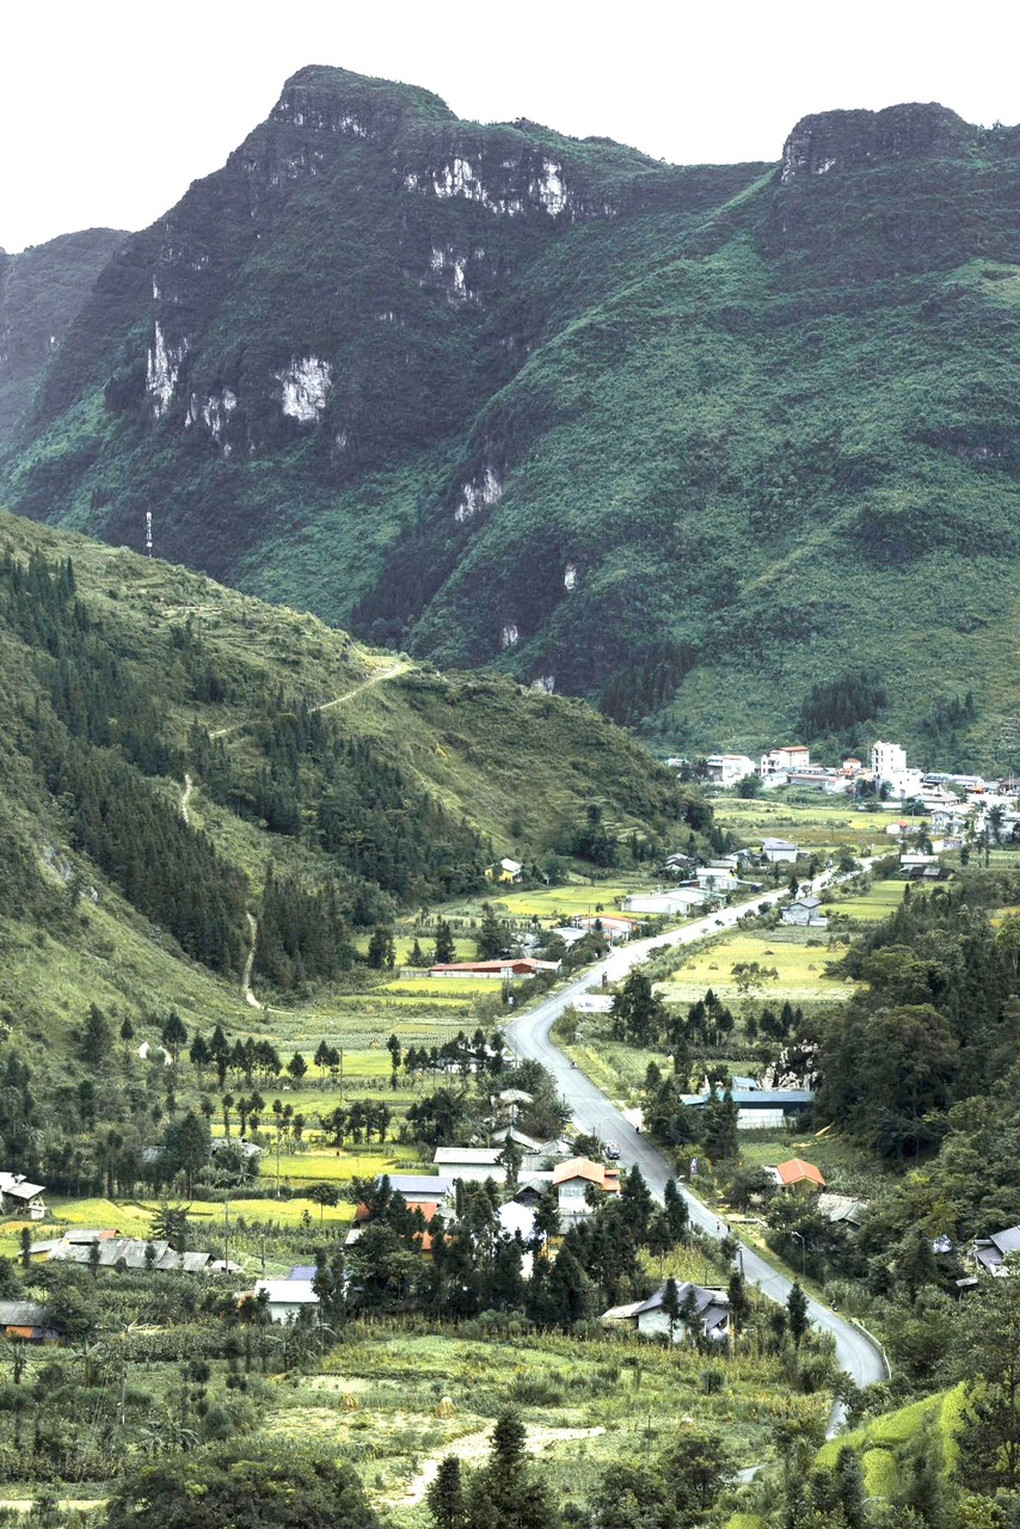 Bức ảnh chụp tại địa điểm ở Hà Giang Việt Nam 'phát sốt' trong những ngày qua vì giống Thụy Sĩ.